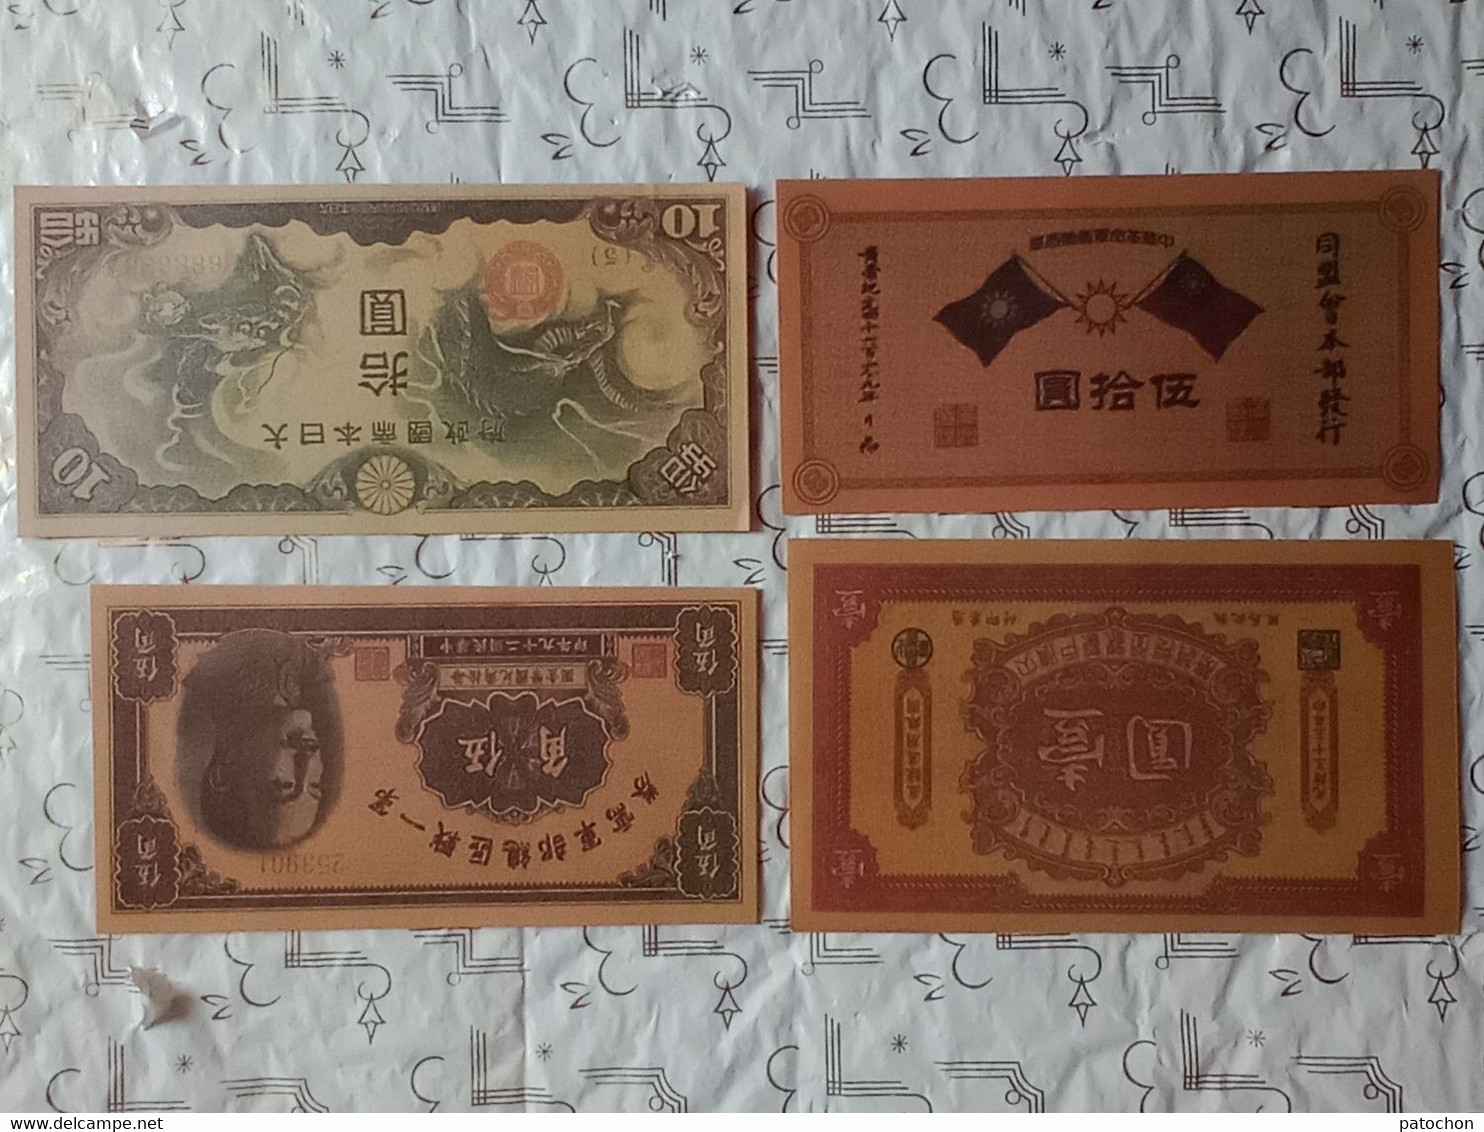 Lot N°6 Chine Asie Extrême Orient 13 Copies Billets Yuan Dollars Vintages 70's.! - Specimen